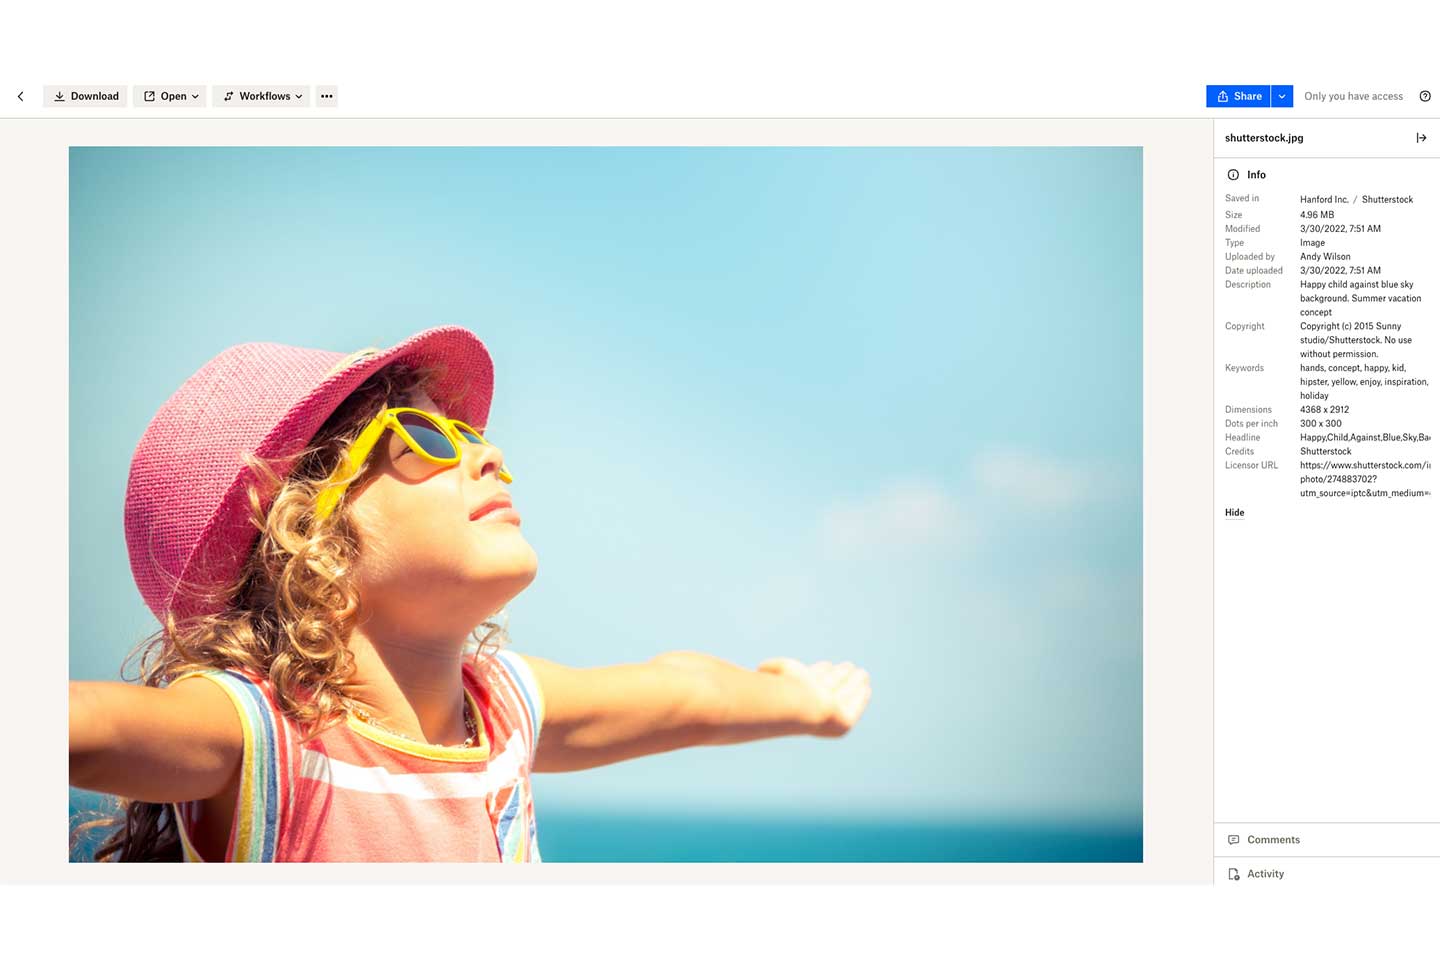 Foto de una niña en la playa mostrada como una vista previa de Dropbox, con los detalles en la barra lateral derecha